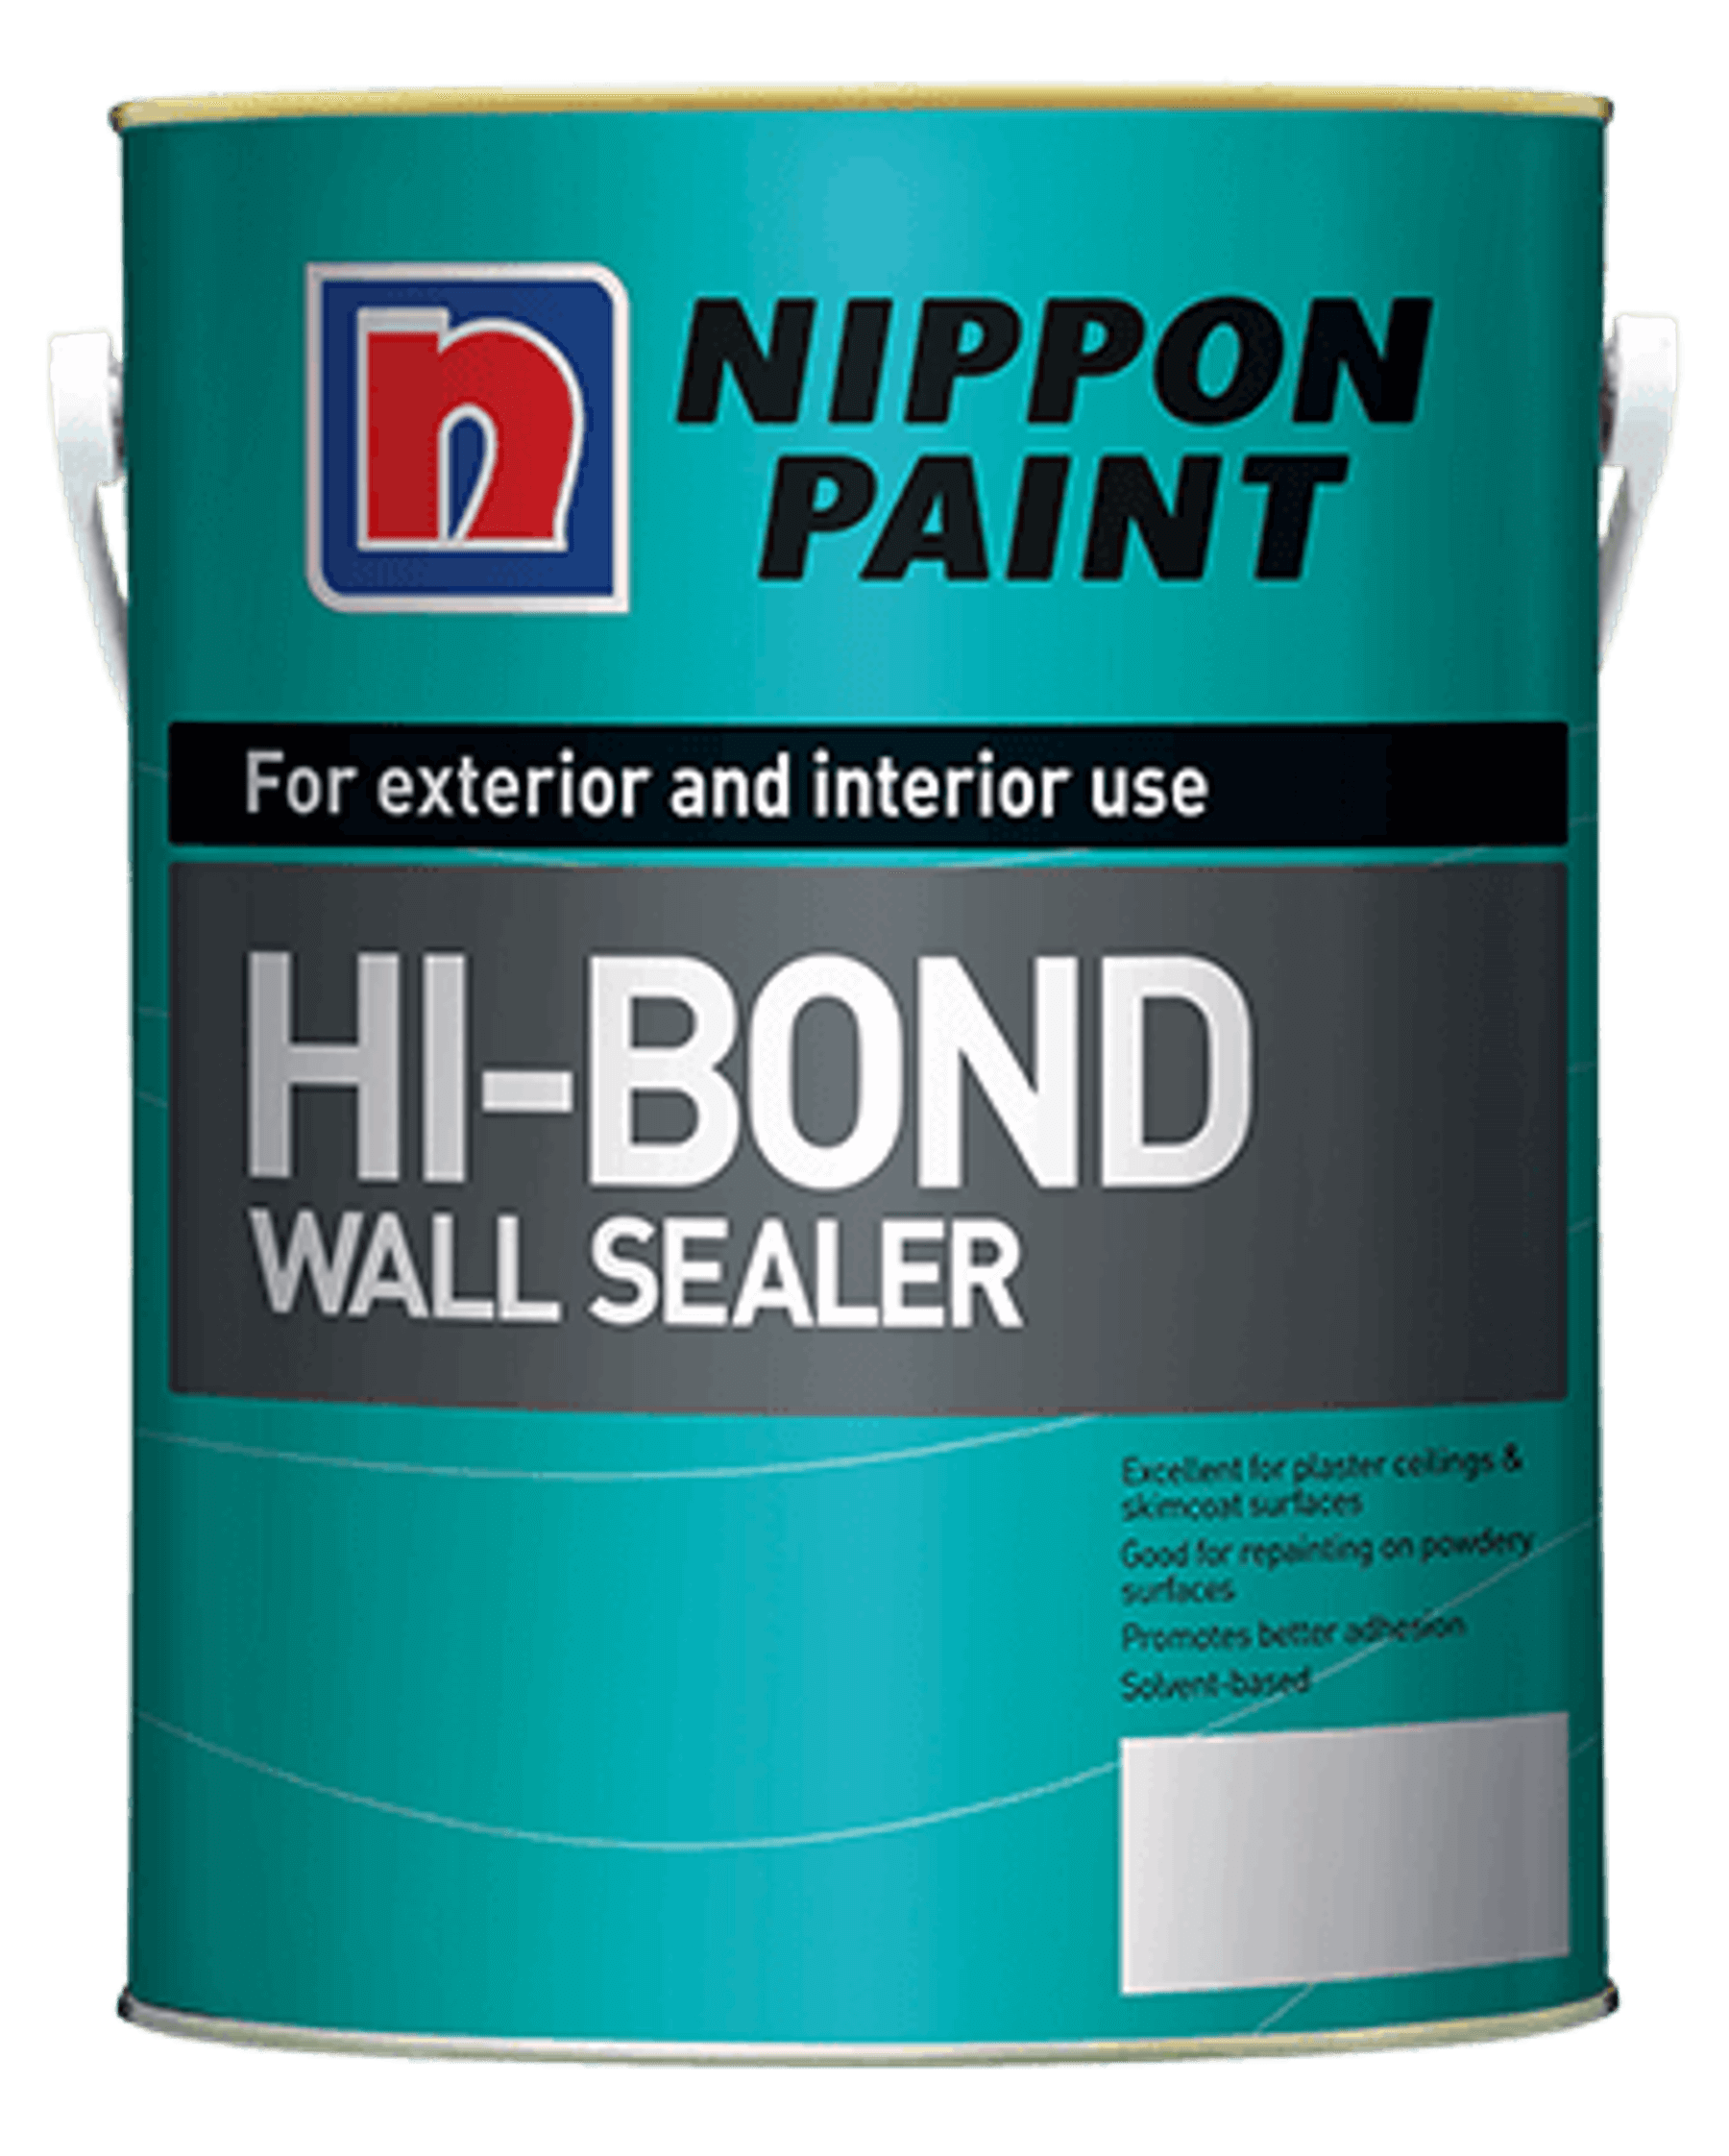 Hi-Bond Wall Sealer